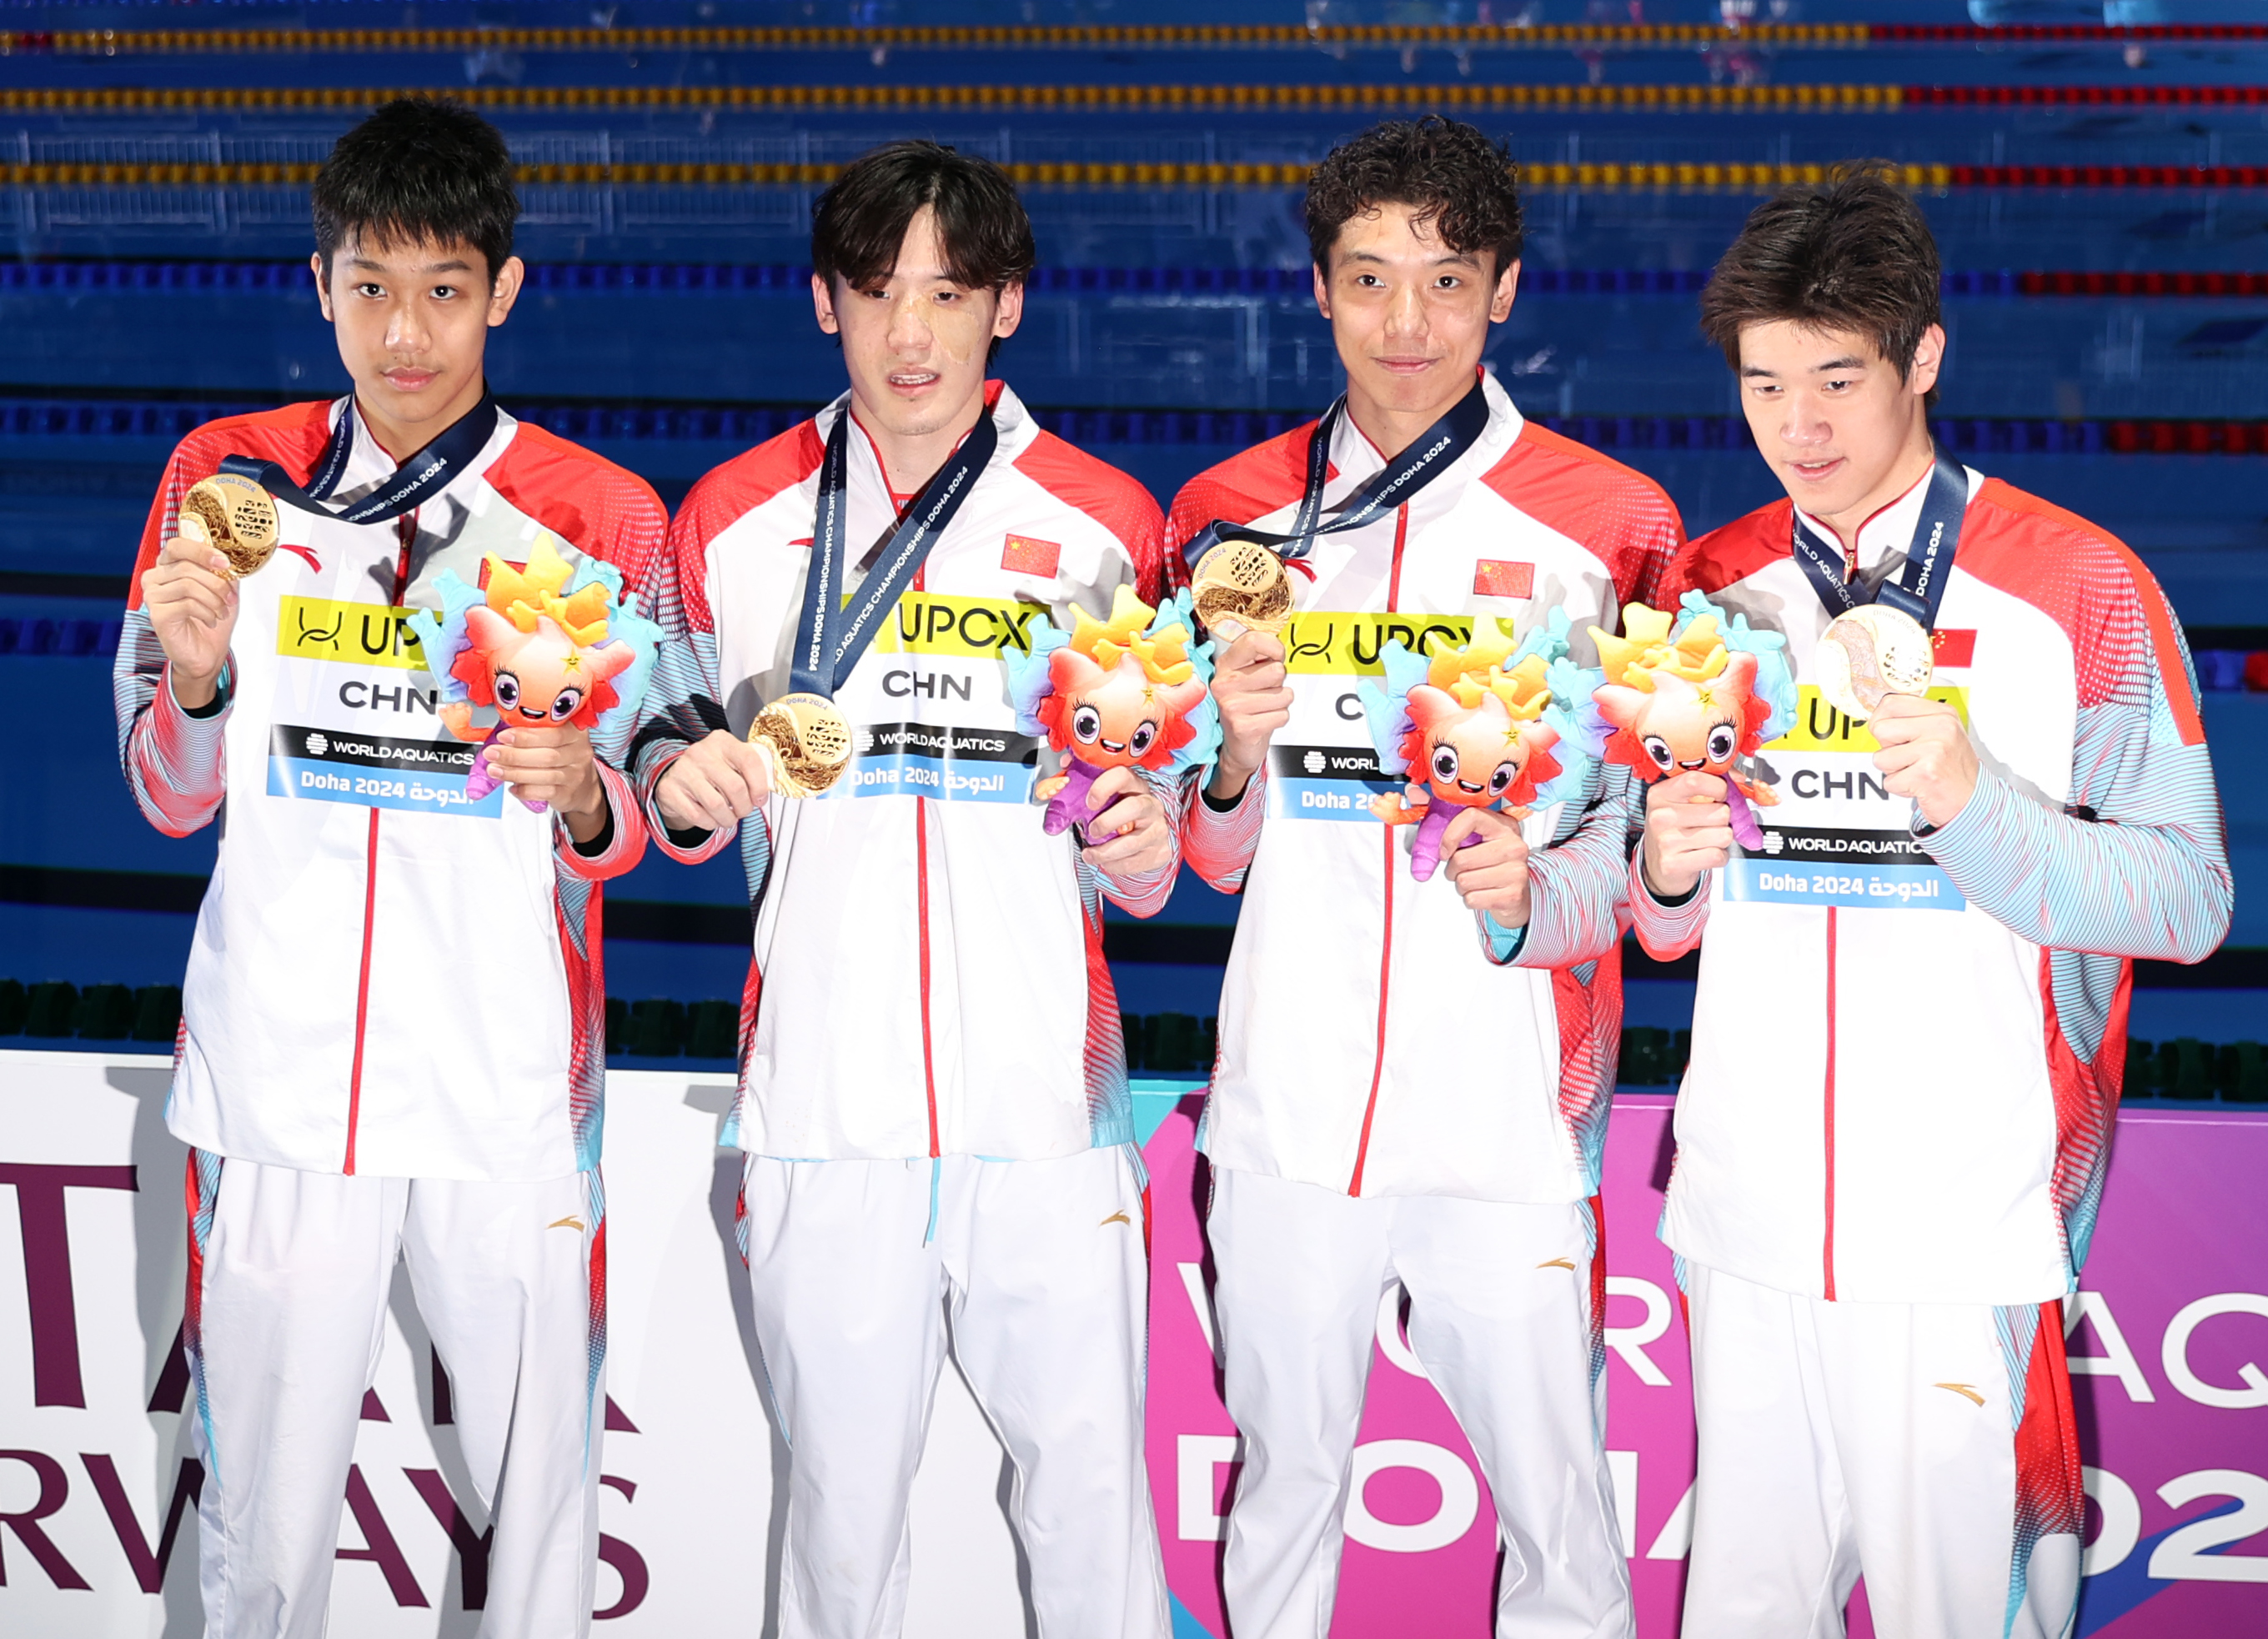 冠軍中國隊選手張展碩、王浩宇、季新傑和潘展樂（從左到右）在頒獎儀式後合影。.JPG